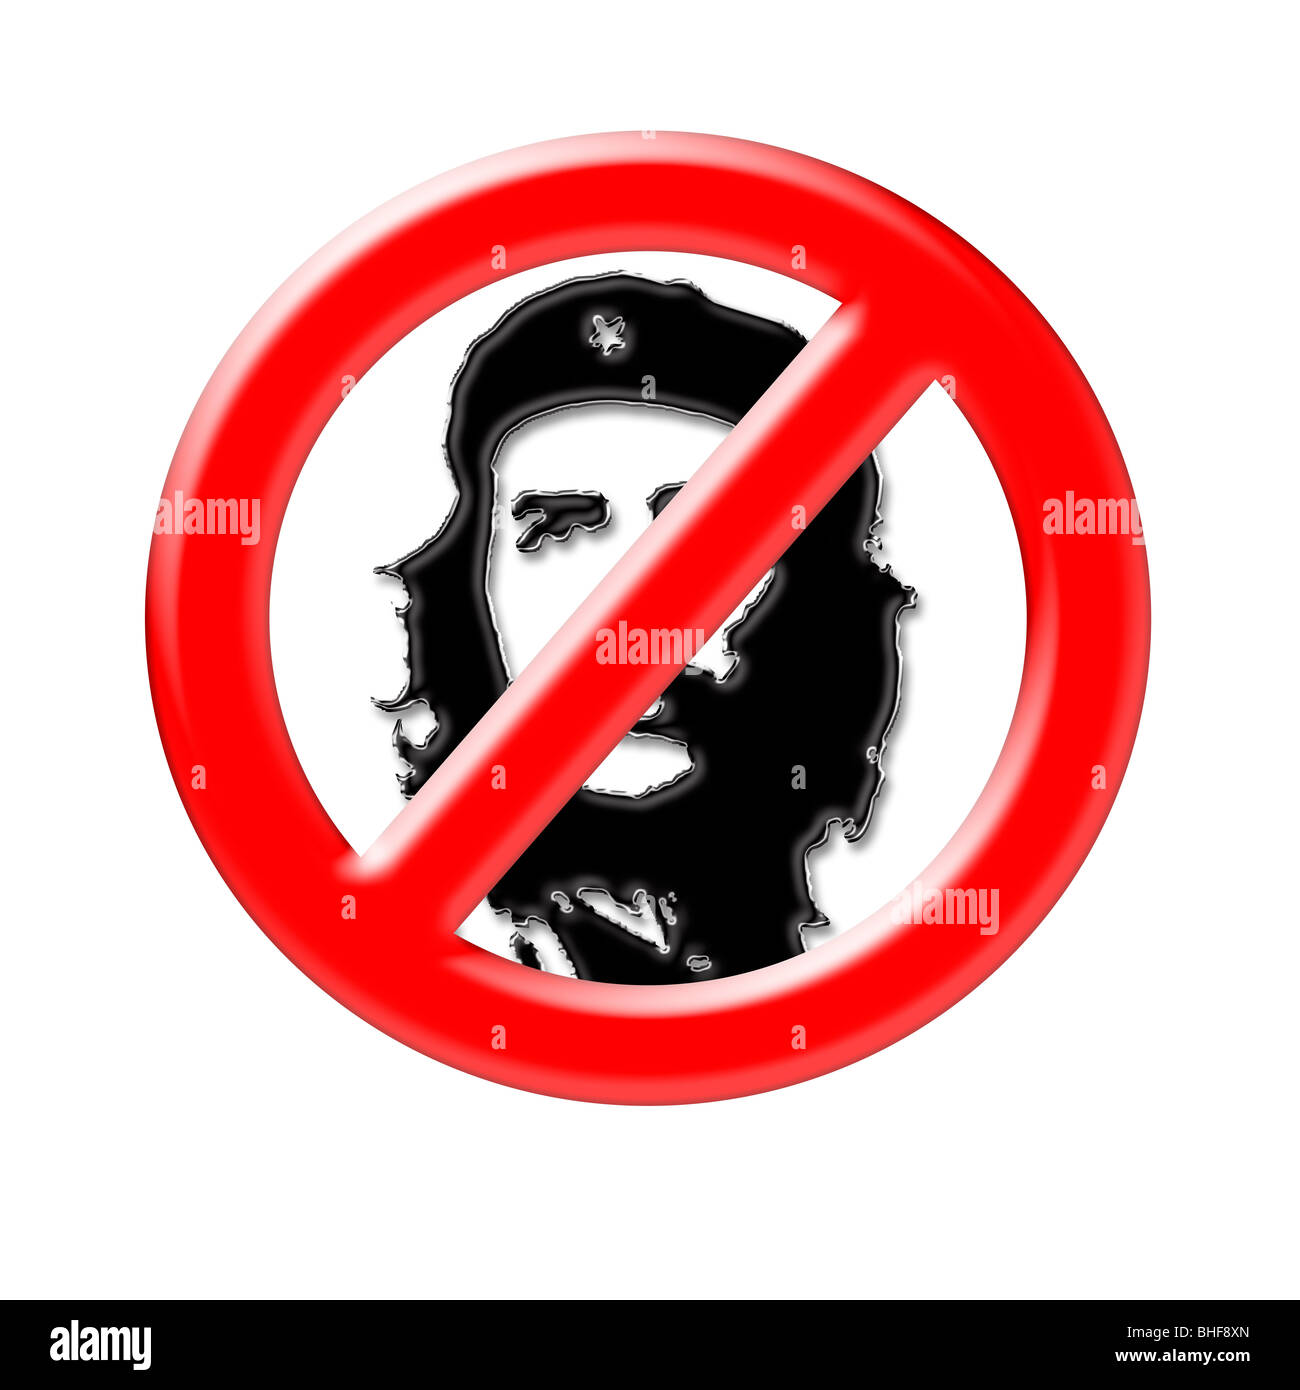 Image conceptuelle d'un pas d'entrée signe, avec une image du révolutionnaire Che Guevara Banque D'Images